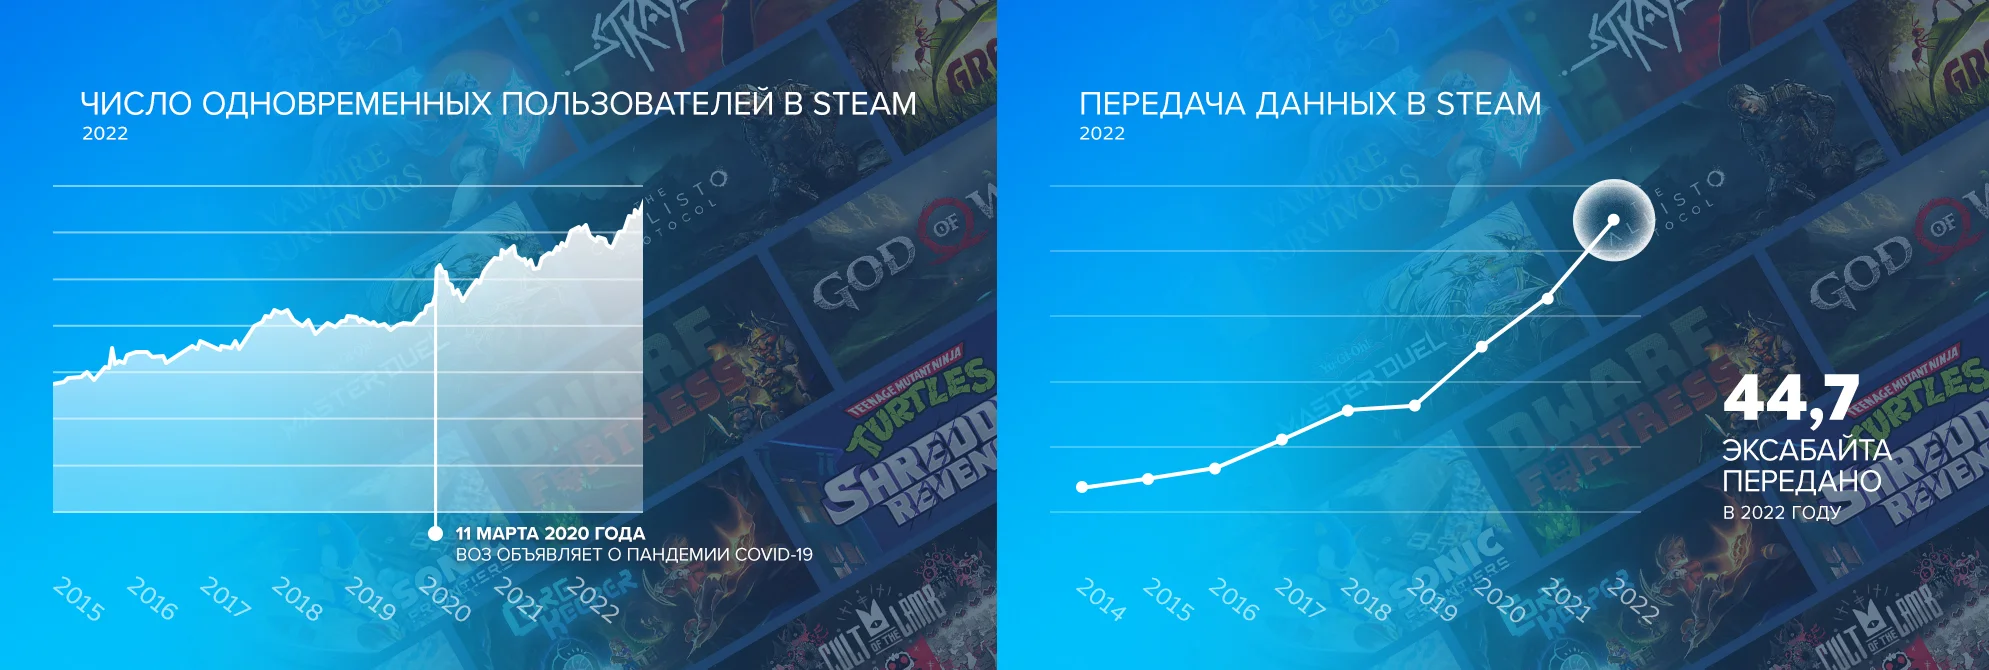 Valve поделилась итогами 2022 года для компании и магазина Steam - фото 2